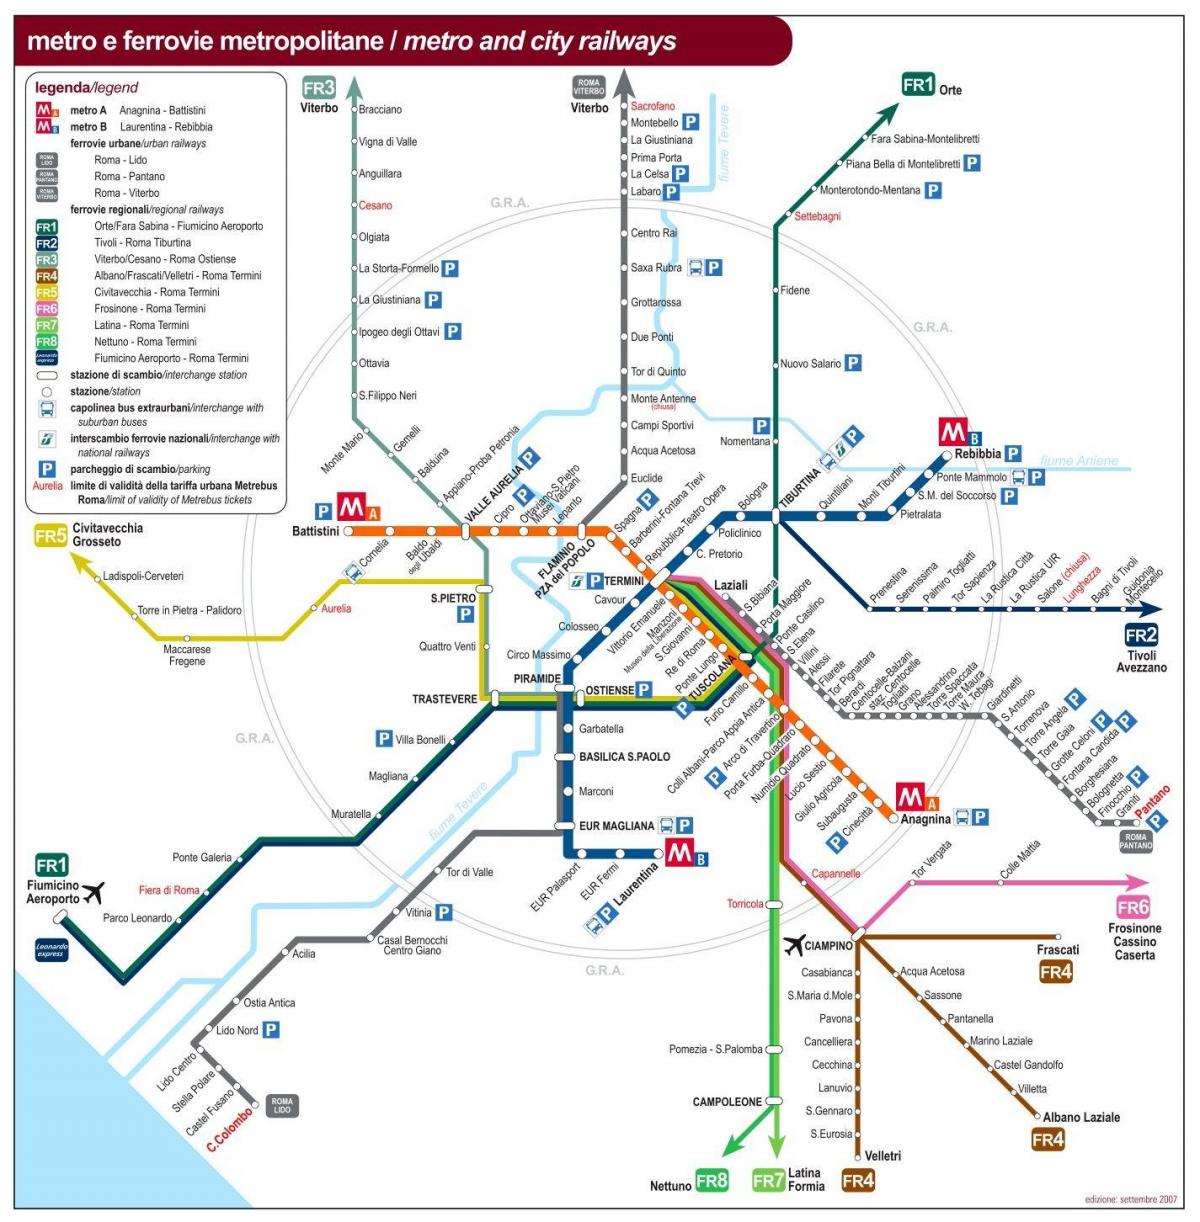 روما خريطة النقل العام